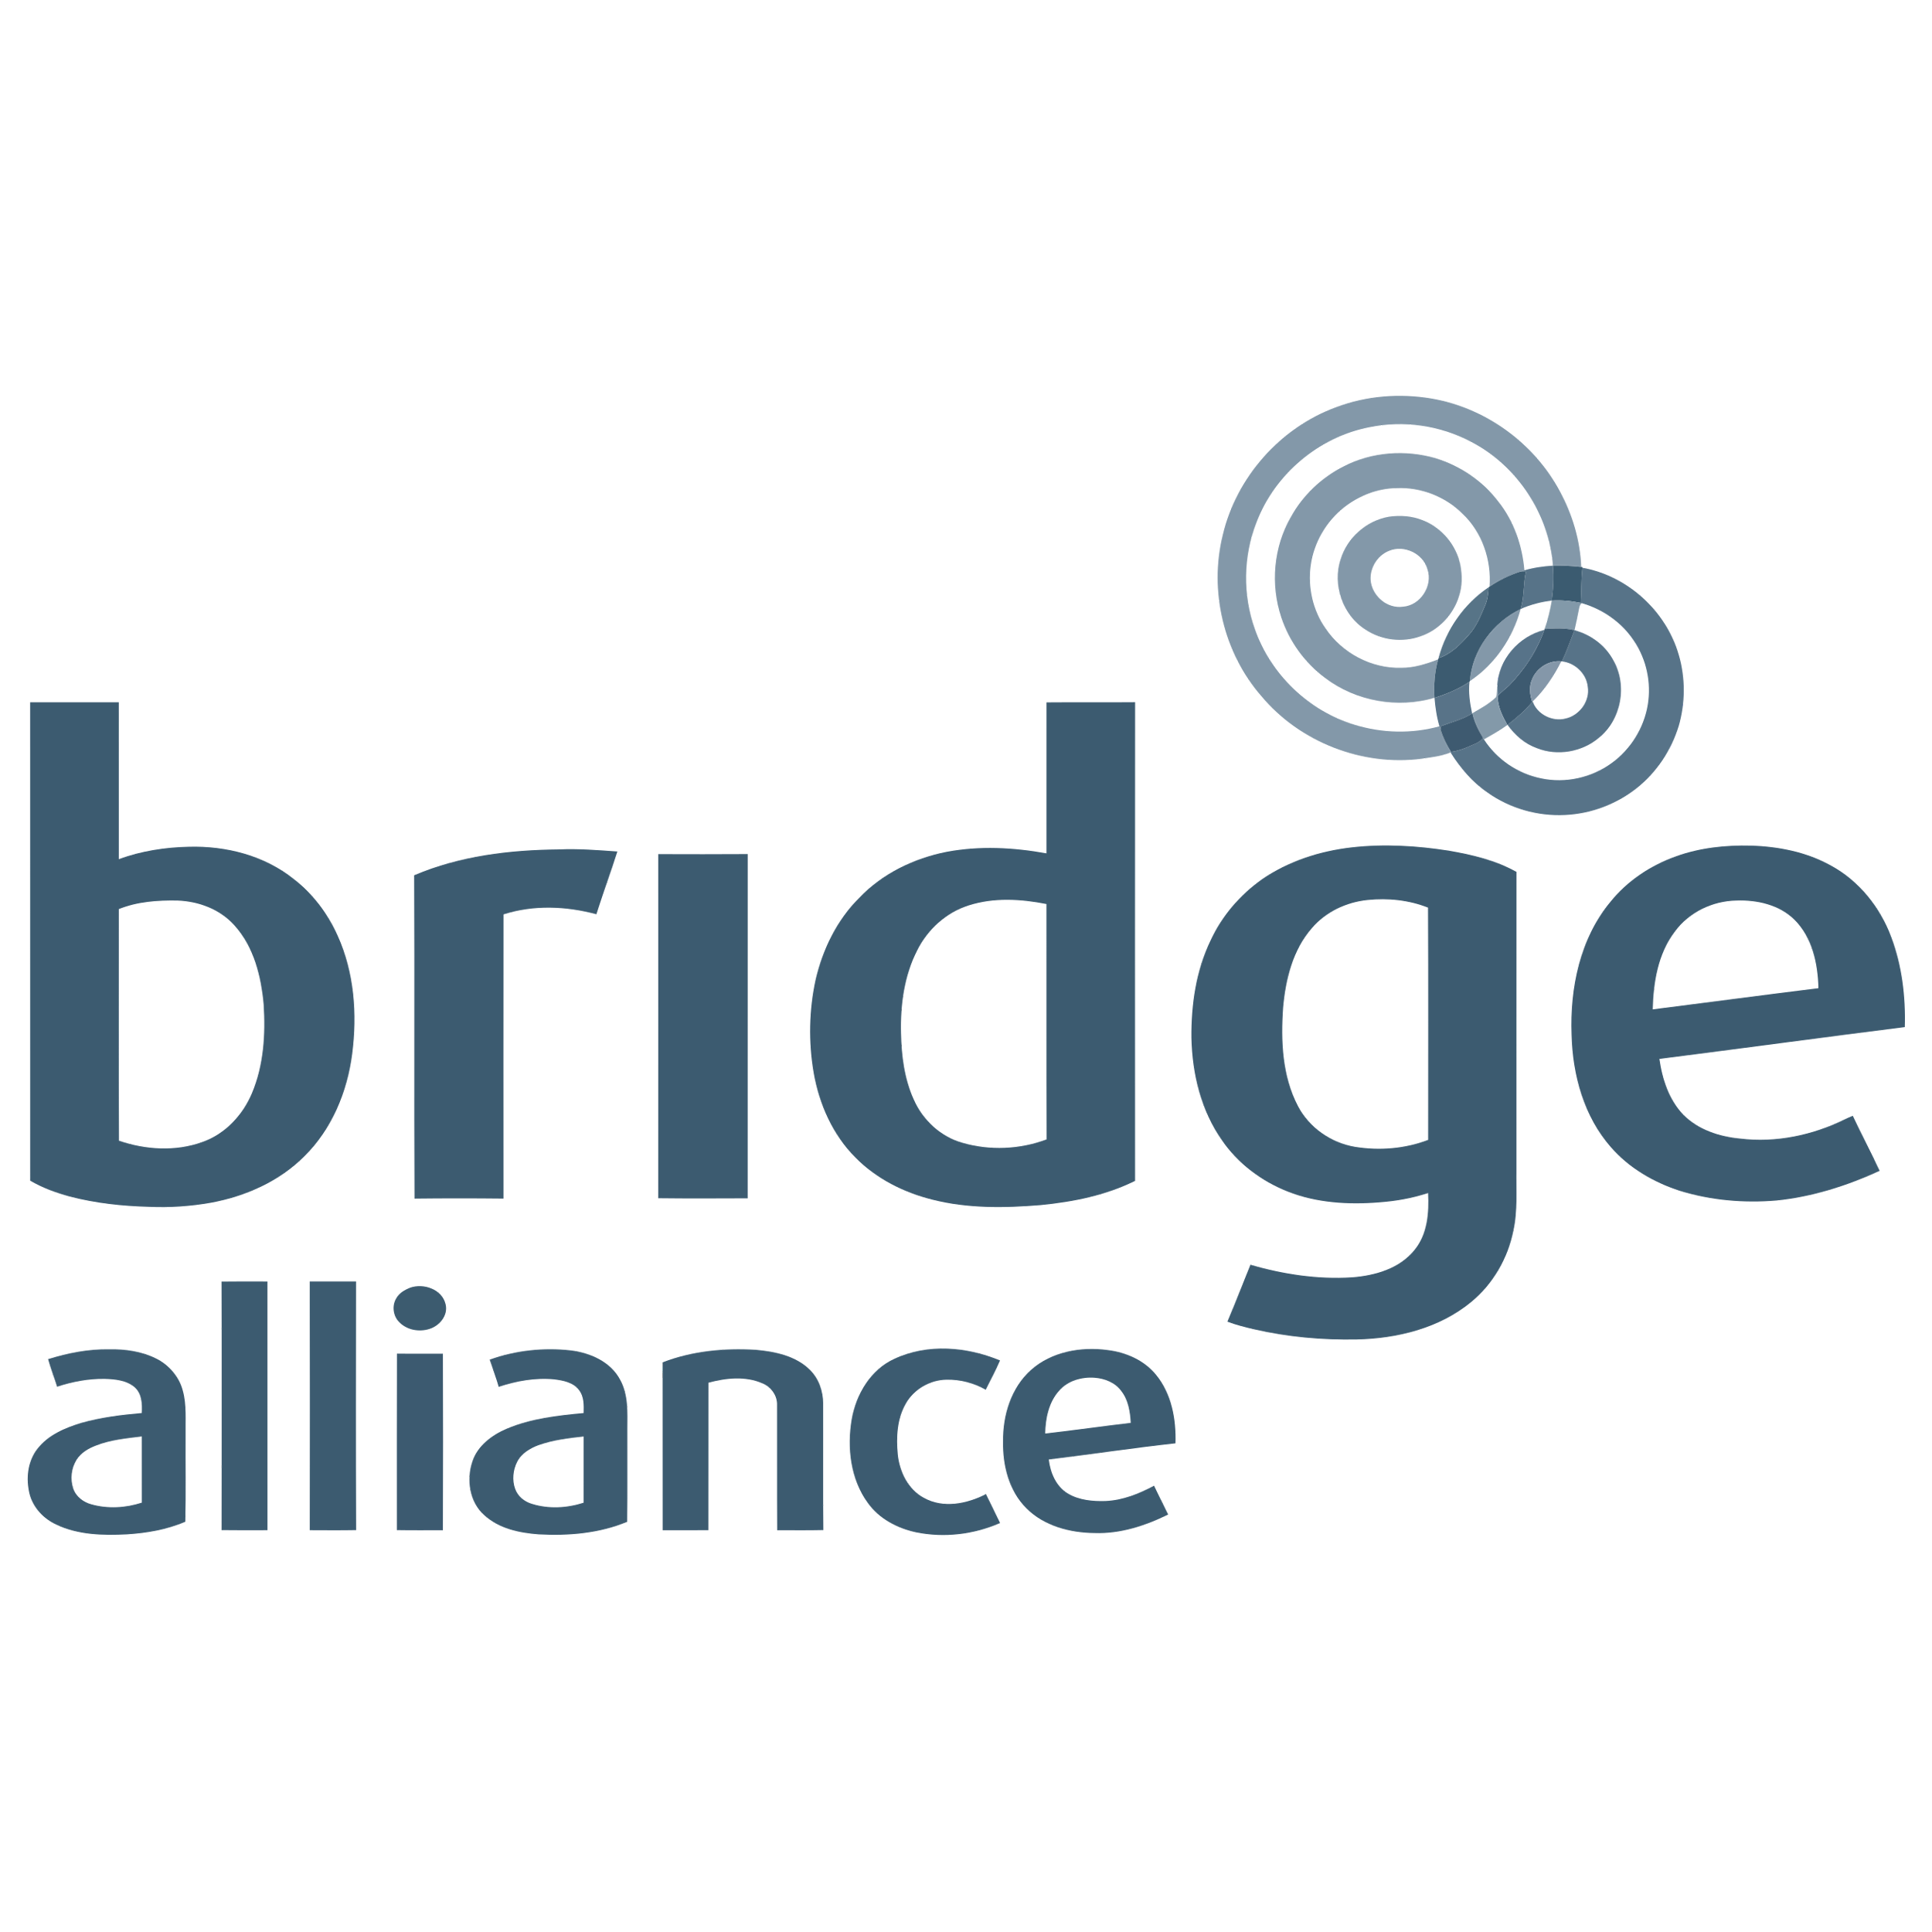 Bridge Alliance Logo  Transparent Image